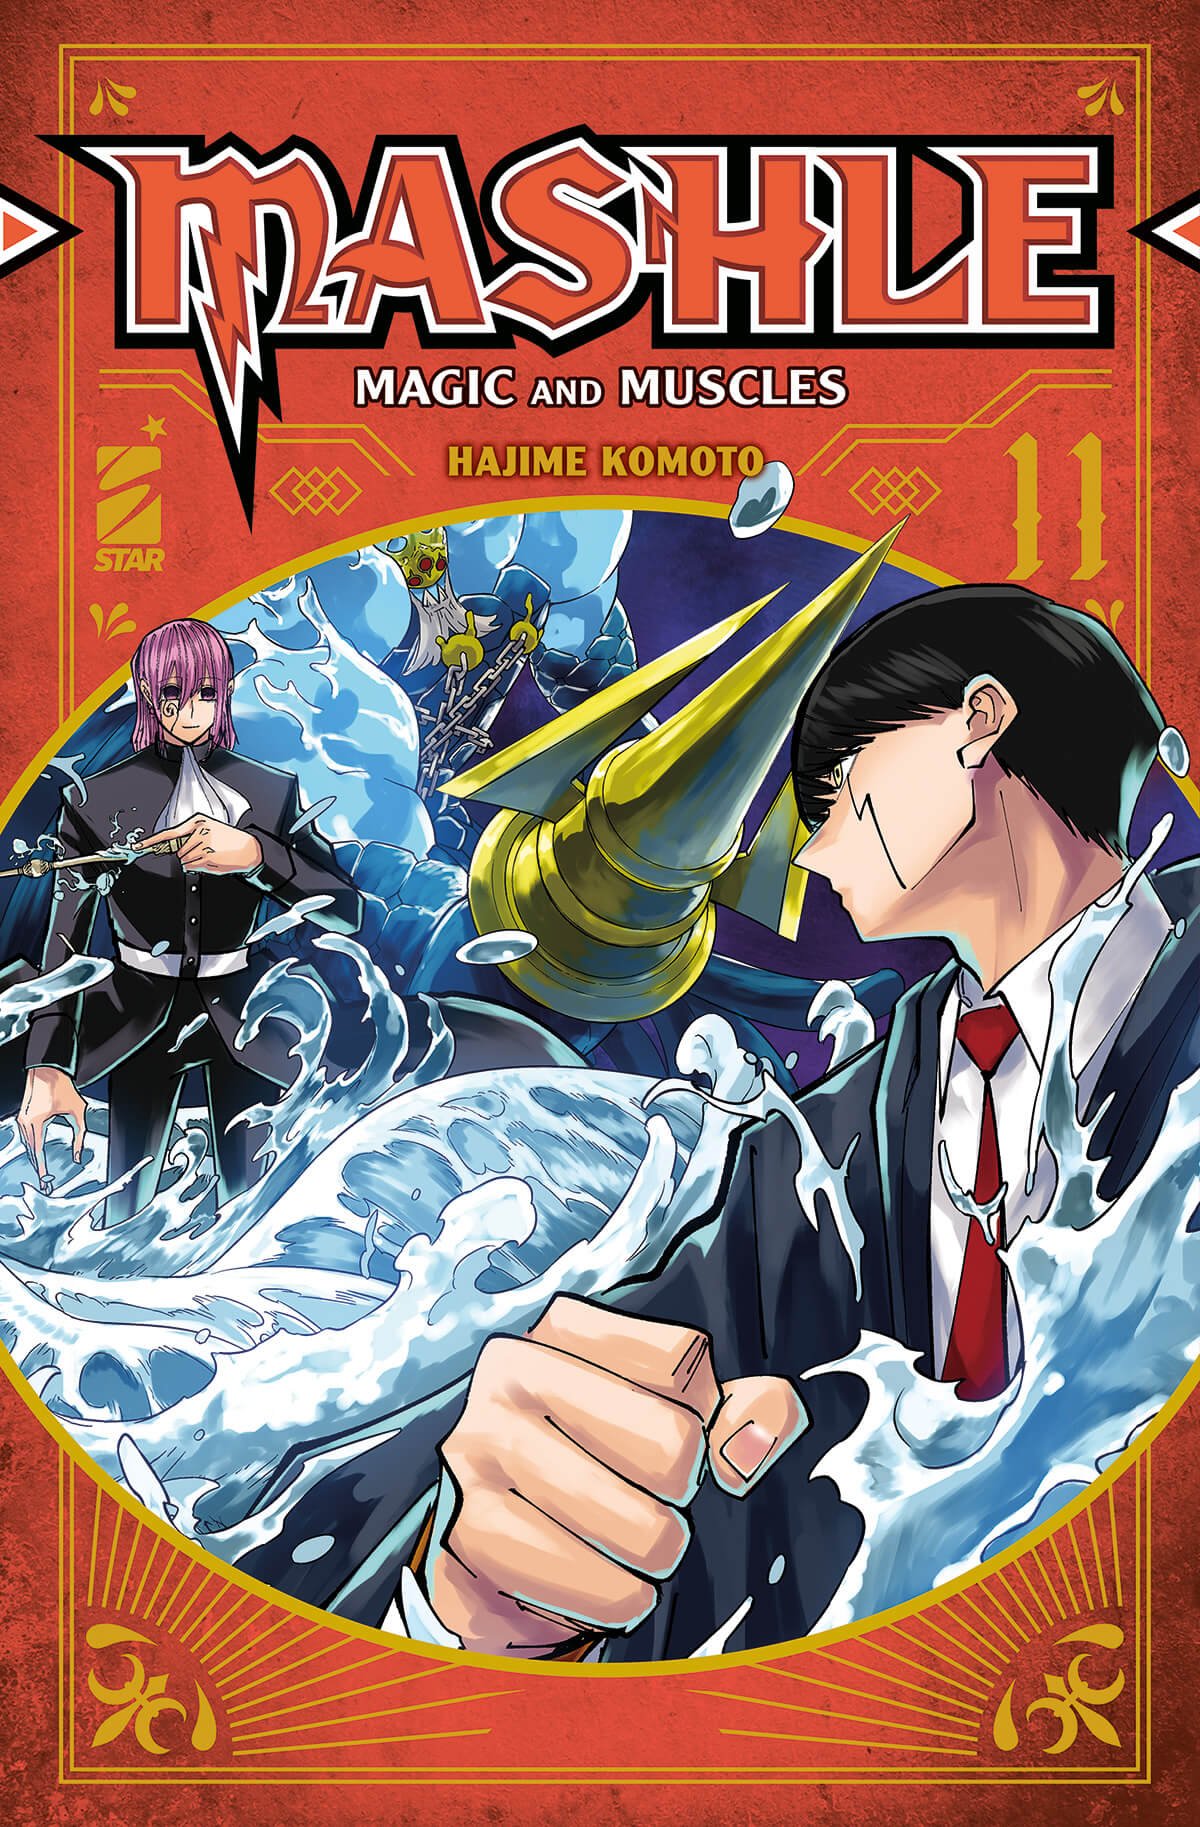 Mashle 11, parmi les sorties manga de Star Comics du 21 juin 2023.